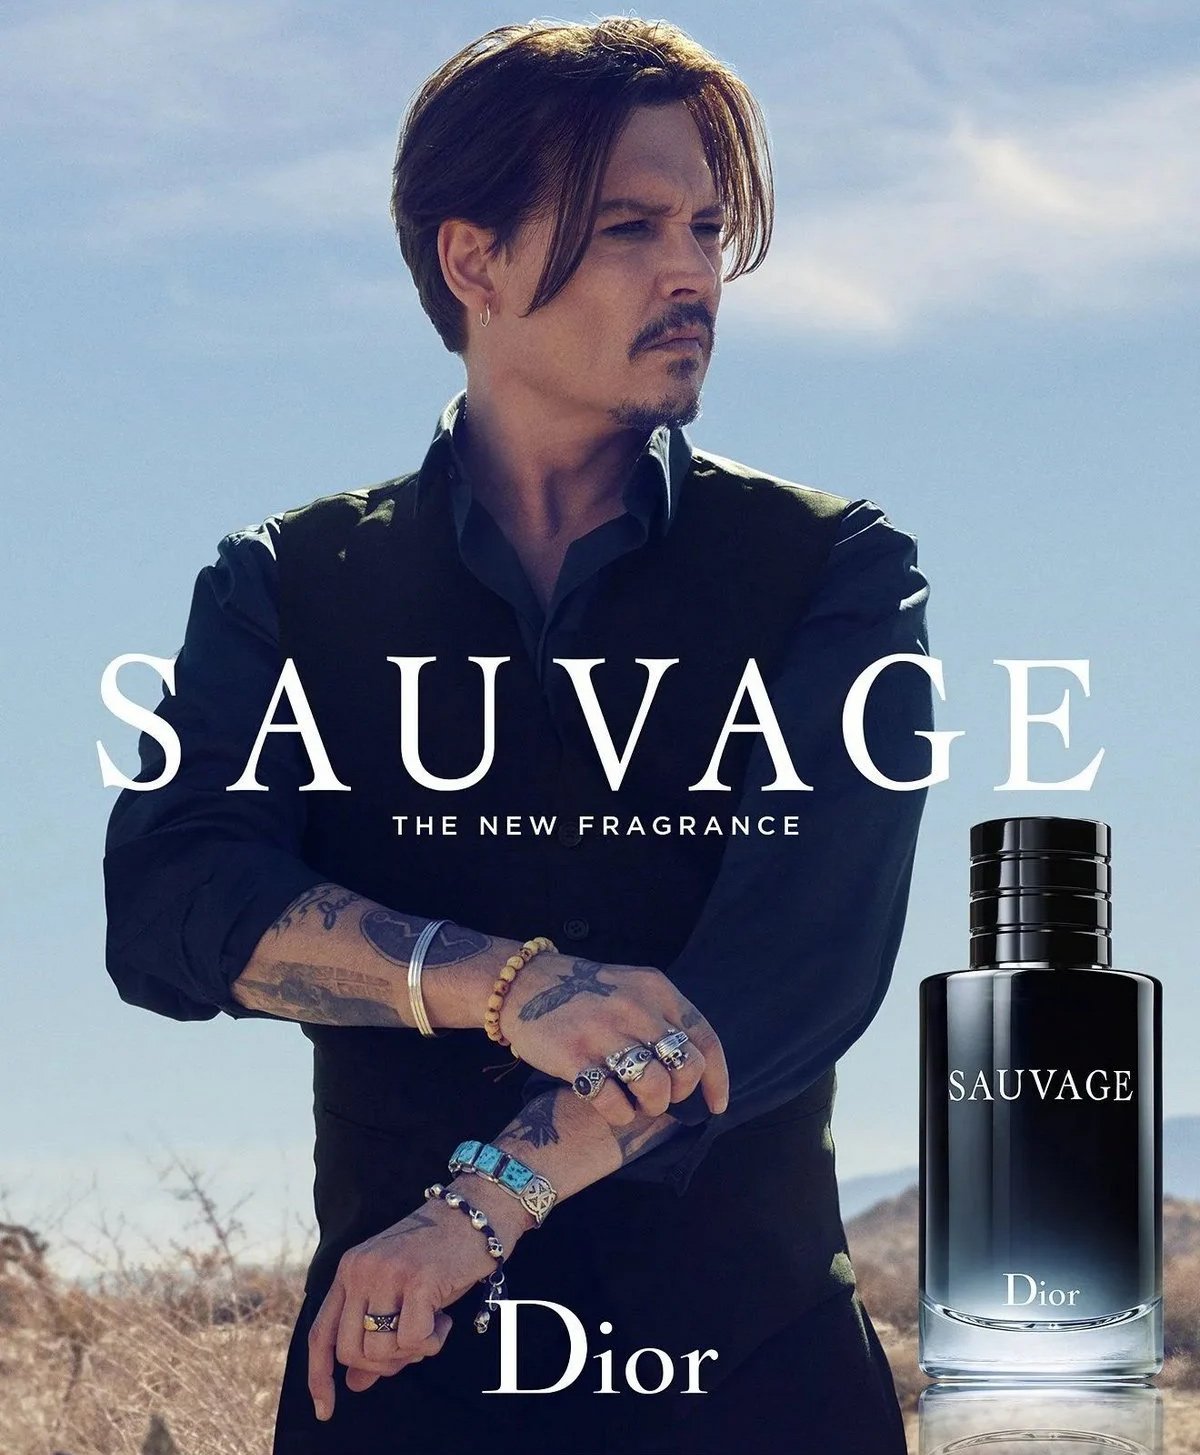 Dior vend un flacon du parfum de Johnny Depp toutes les trois secondes